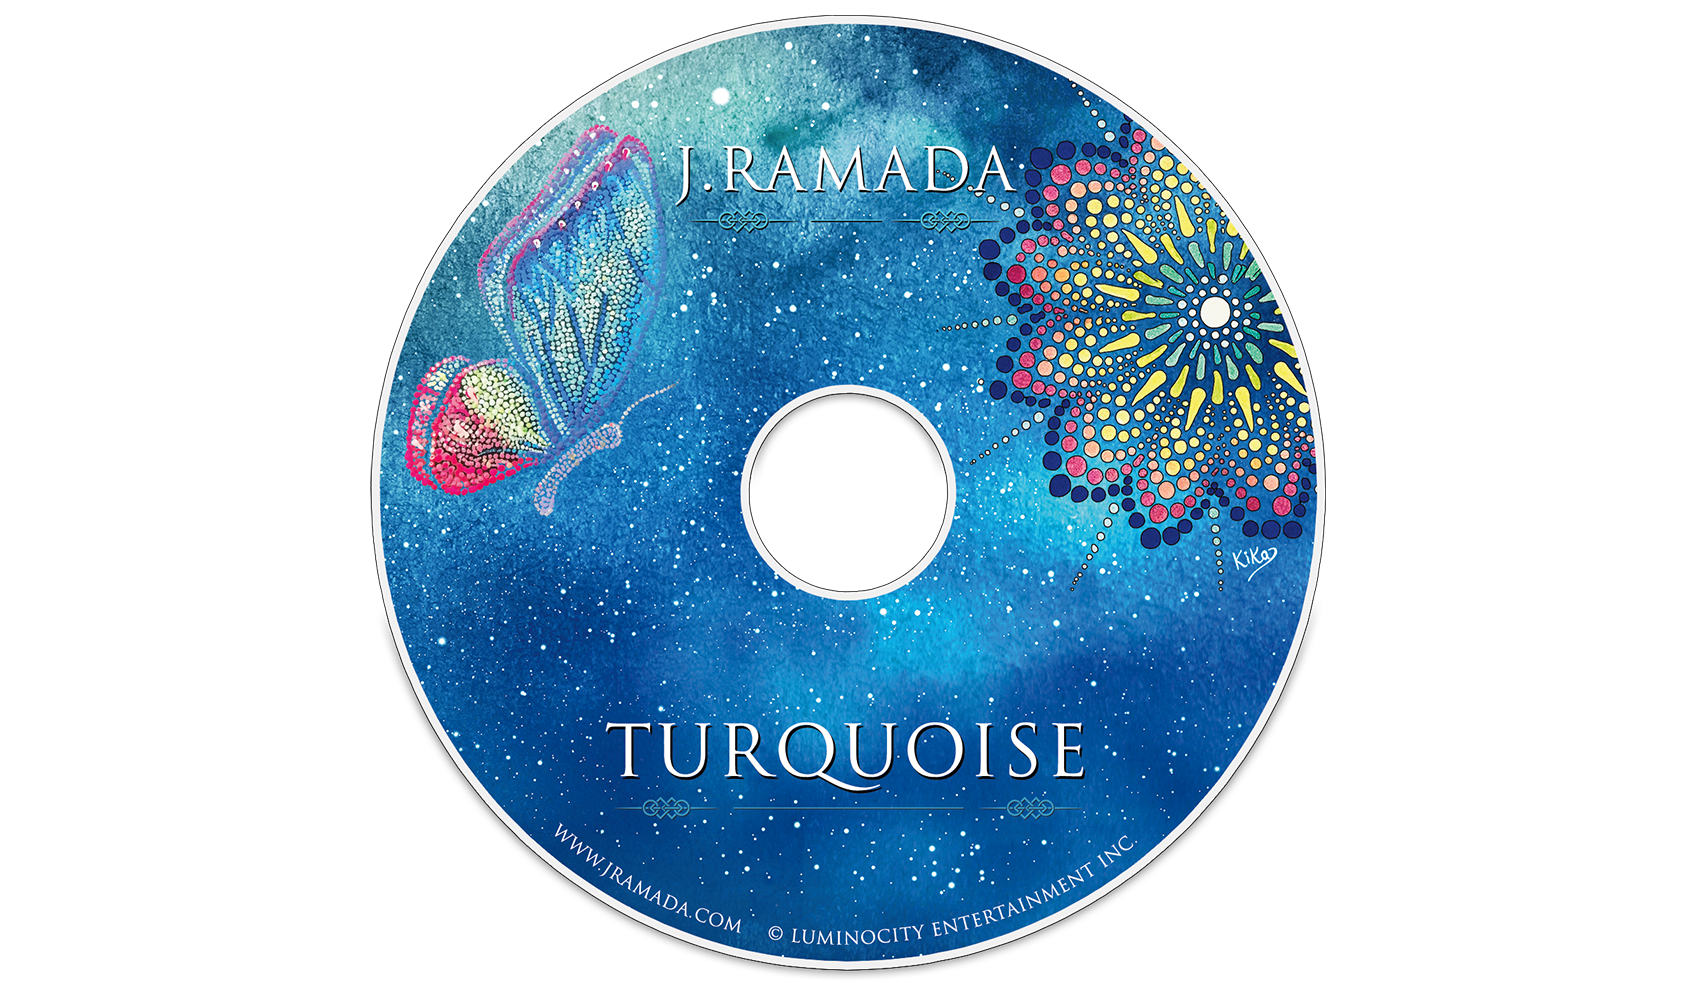 j.ramada turquoise album cd artwork design